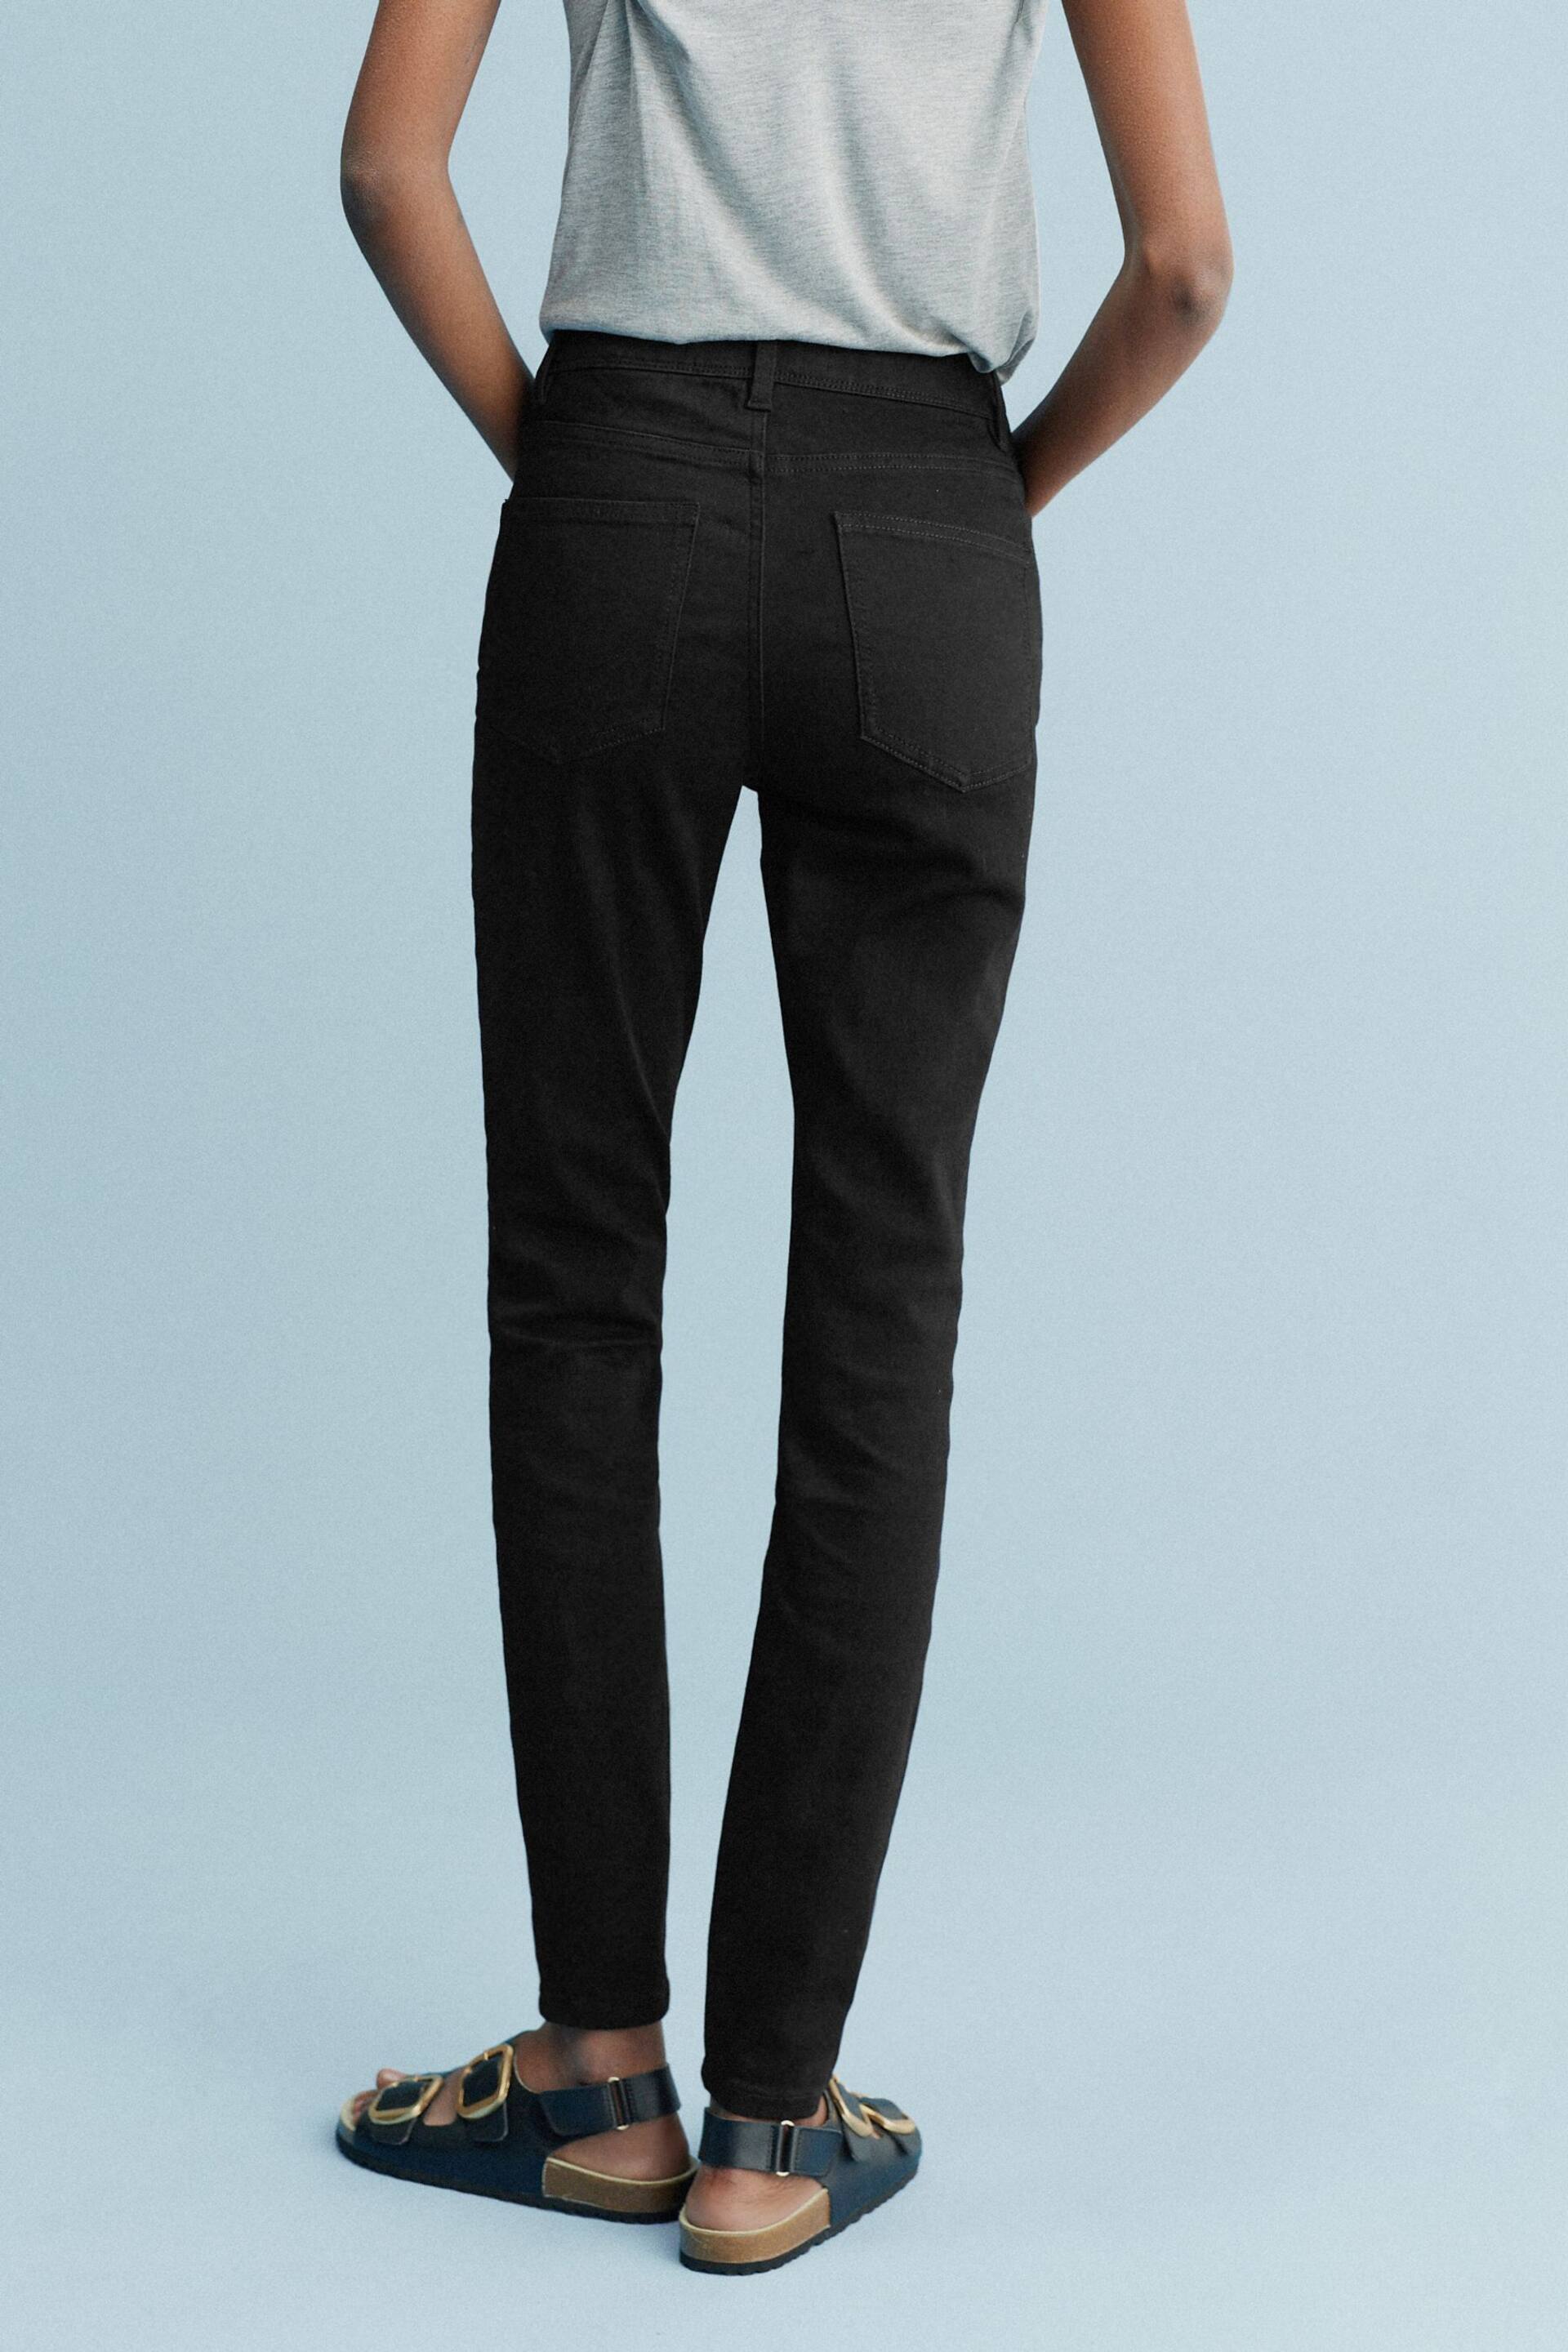 Black Denim Skinny Jeans - Image 4 of 5